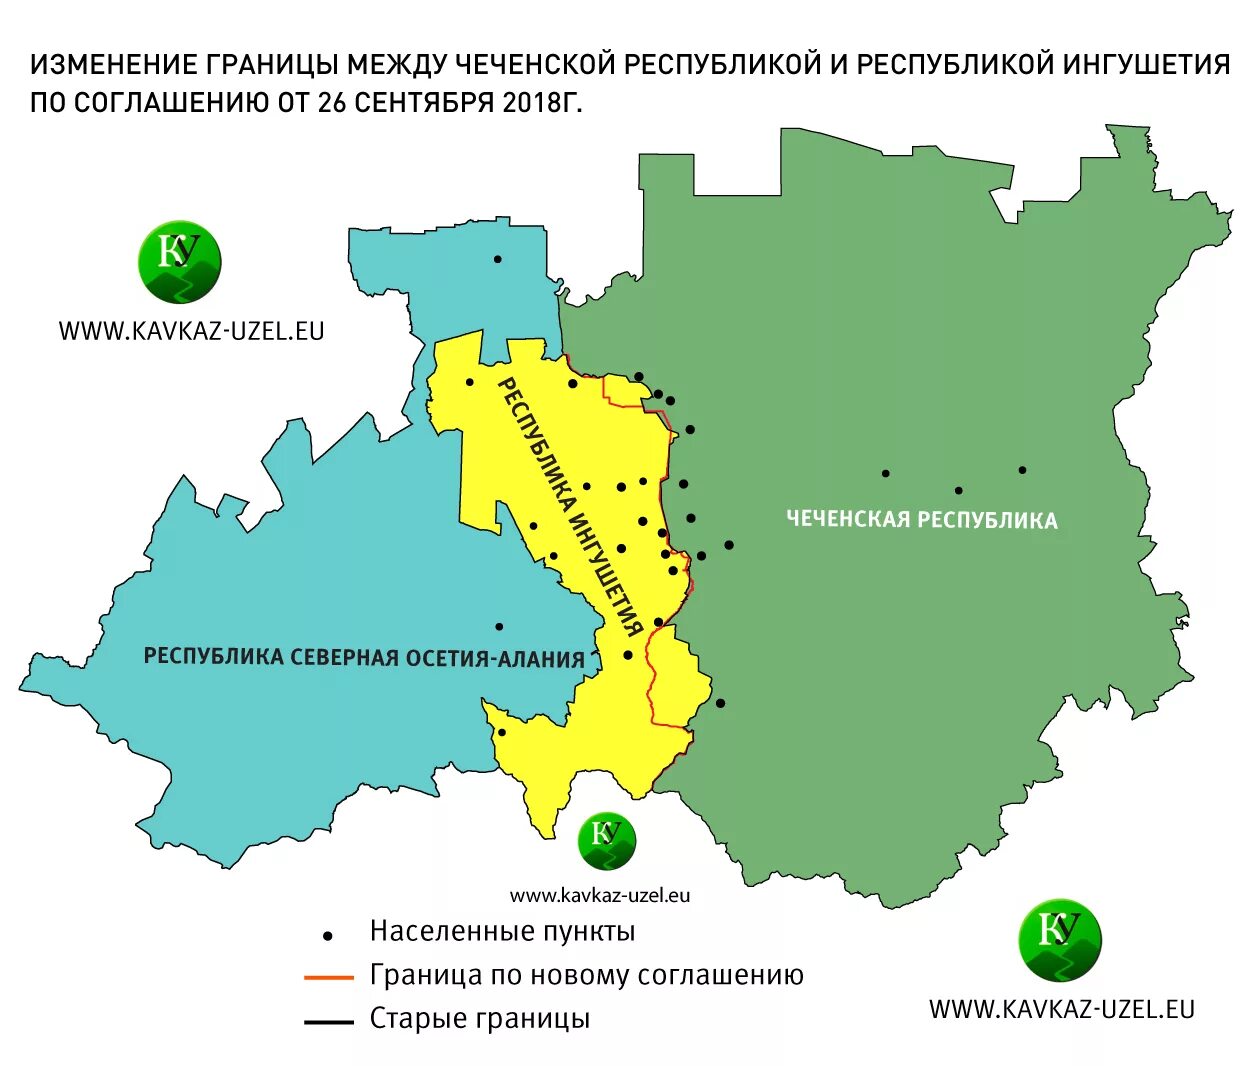 Ингушский мун что значит. Граница между Чечней и Ингушетией 2018. Граница Чечни и Ингушетии после 2018 года на карте. Чечня и Ингушетия на карте. Граница между Ингушетией и Чечней на карте.